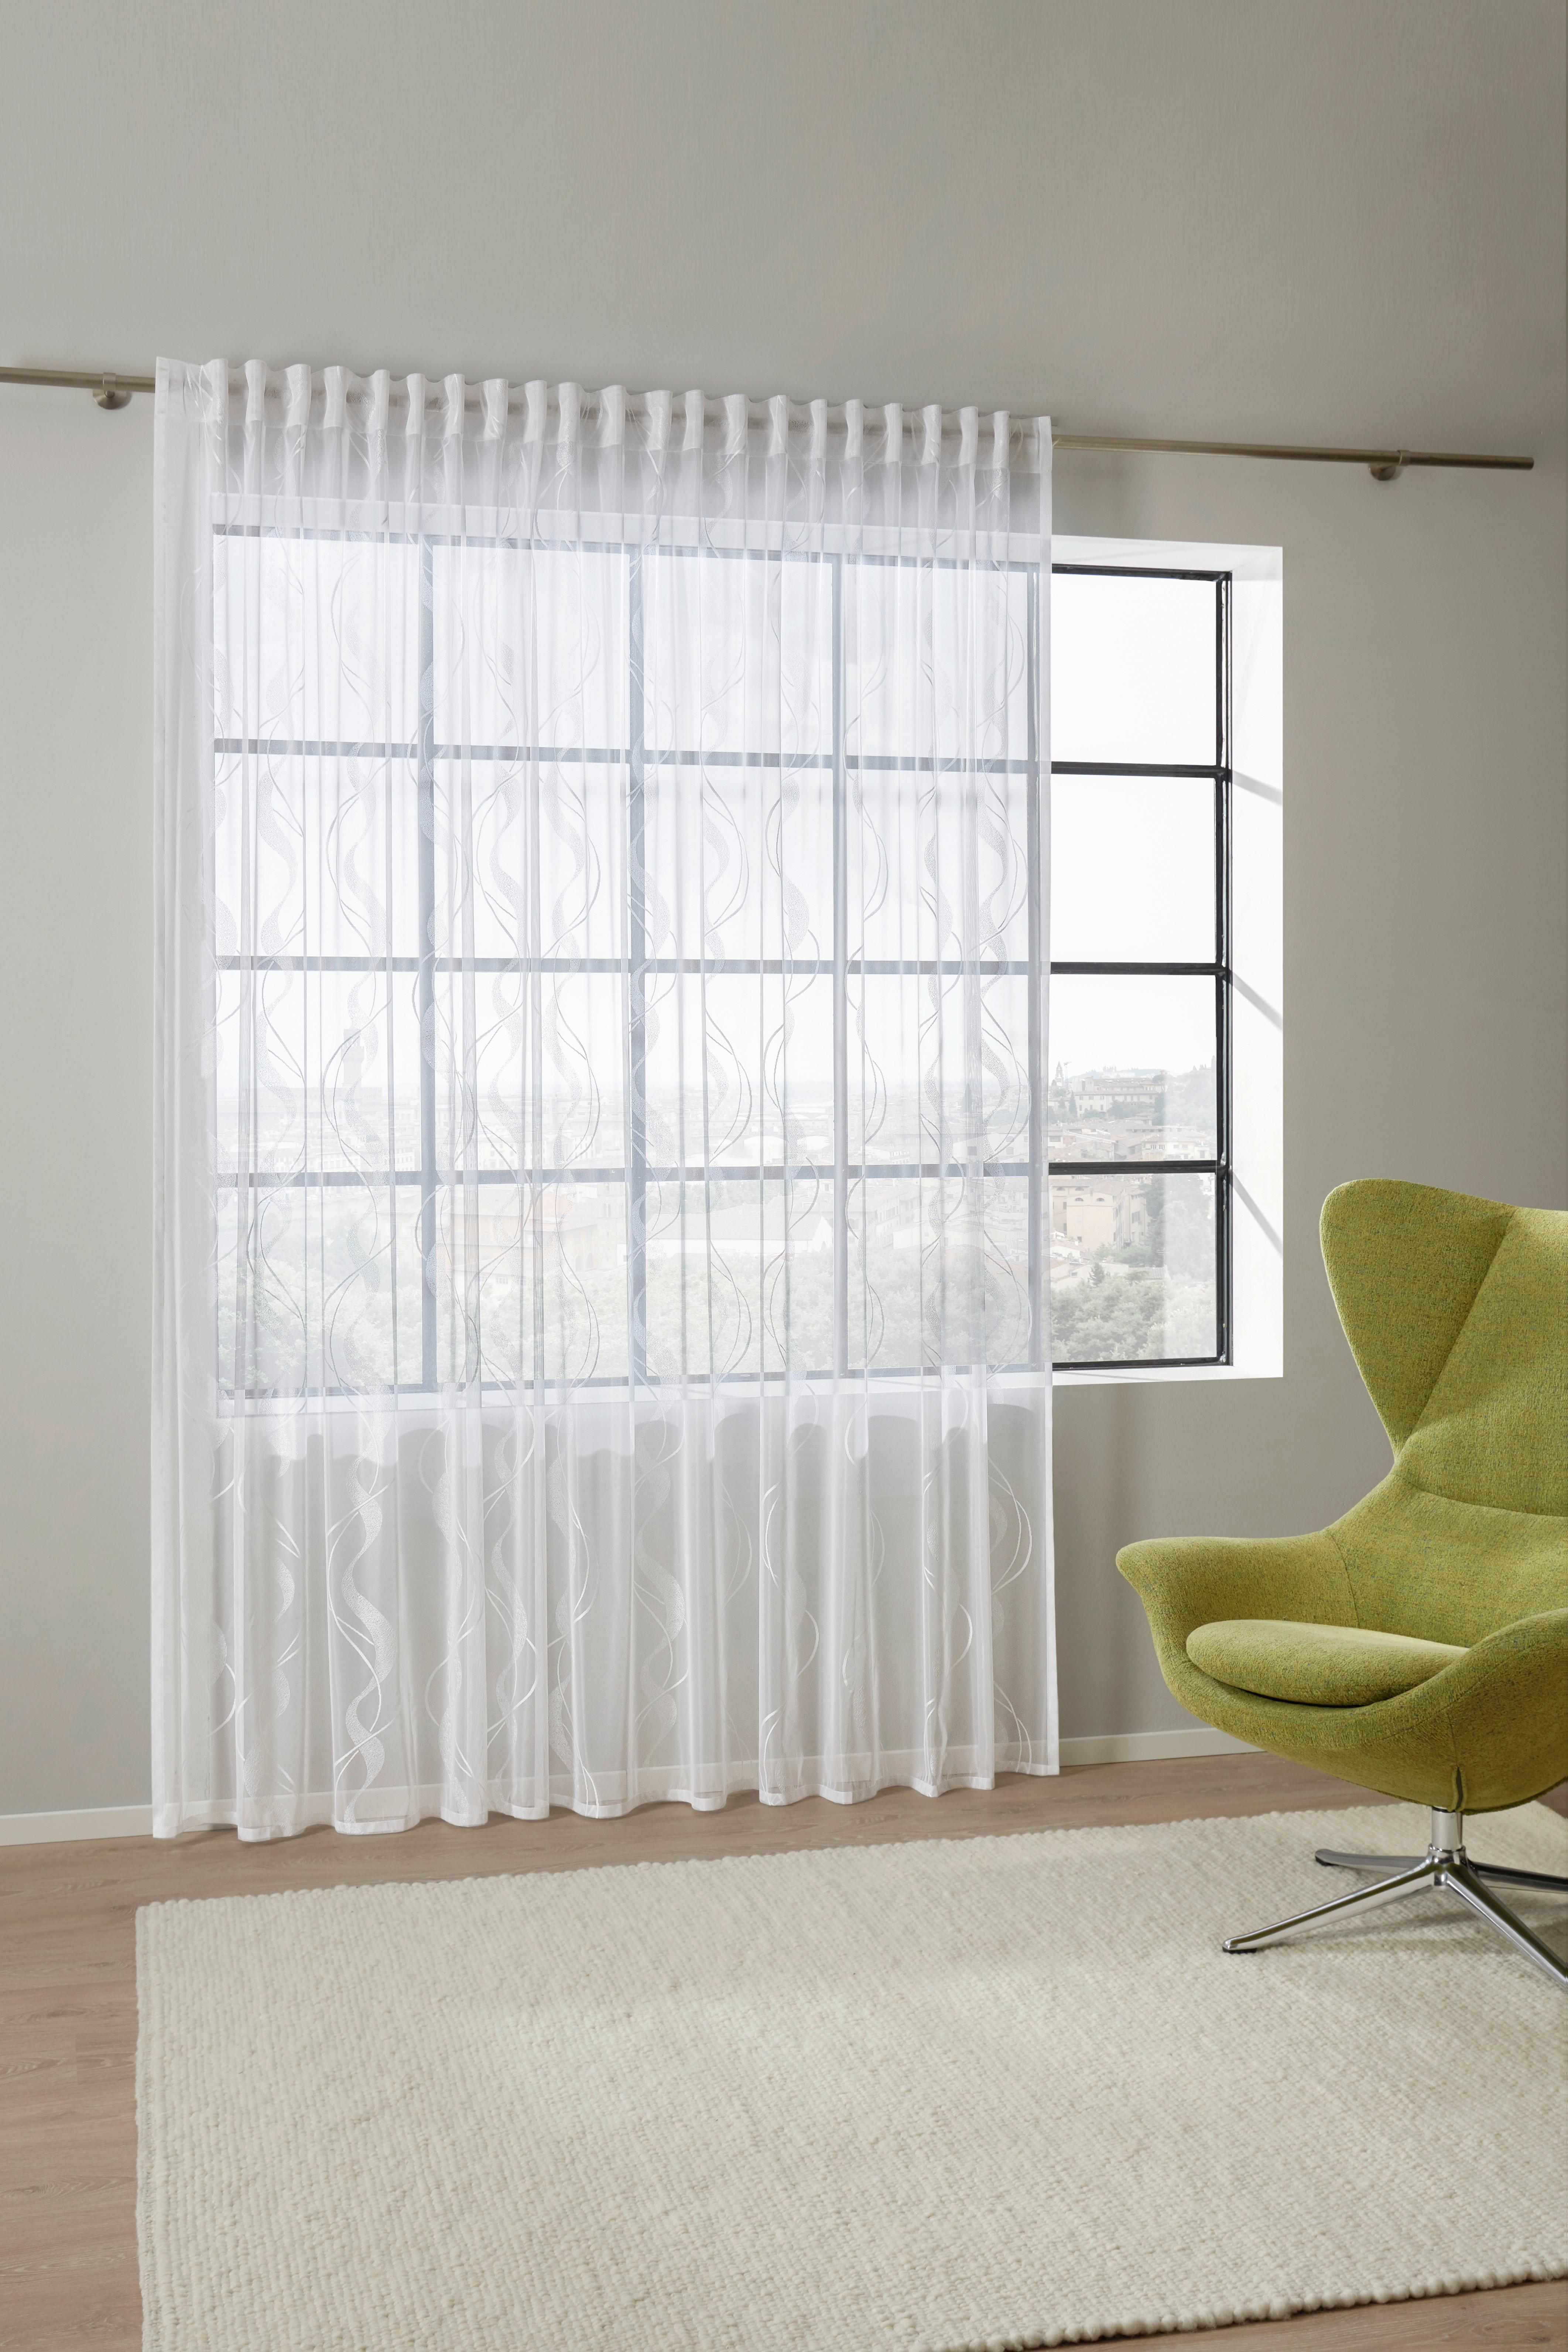 Készfüggöny Wave Store 300/245 - Fehér, Textil (300/245cm) - Modern Living